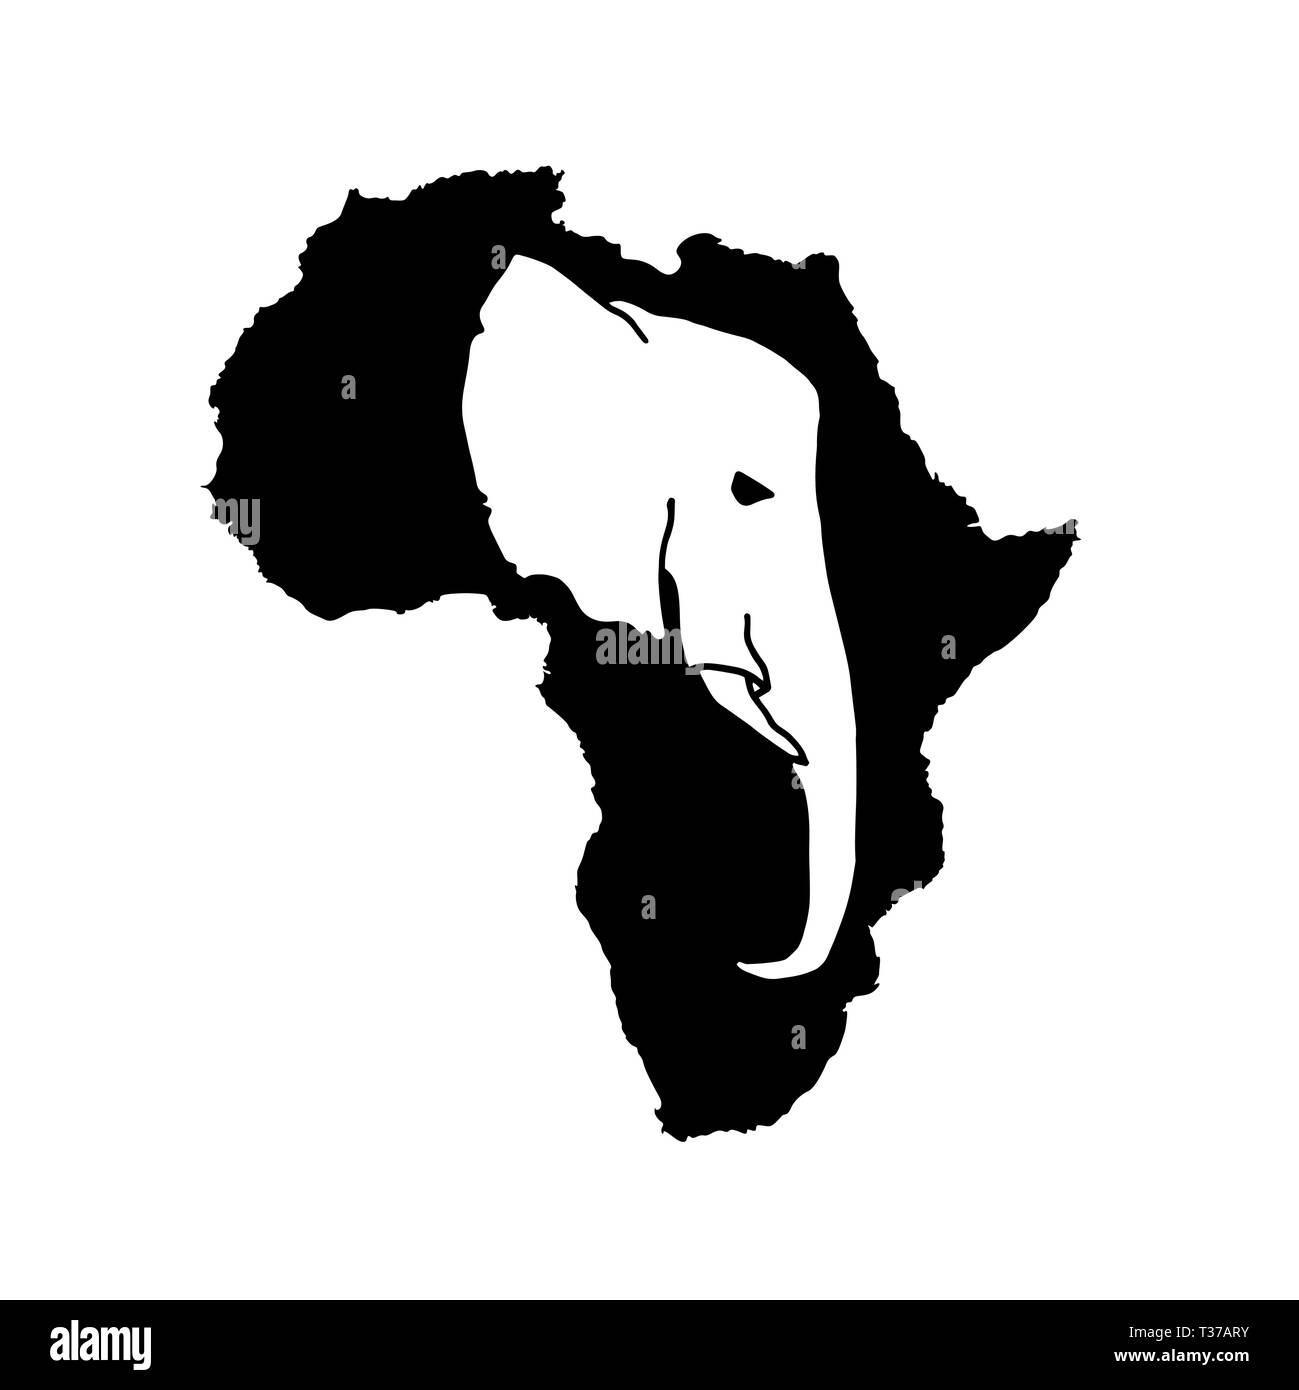 Vektor Silhouette des schwarzen Afrika mit White Elephant Head Silhouette im Inneren. Stock Vektor